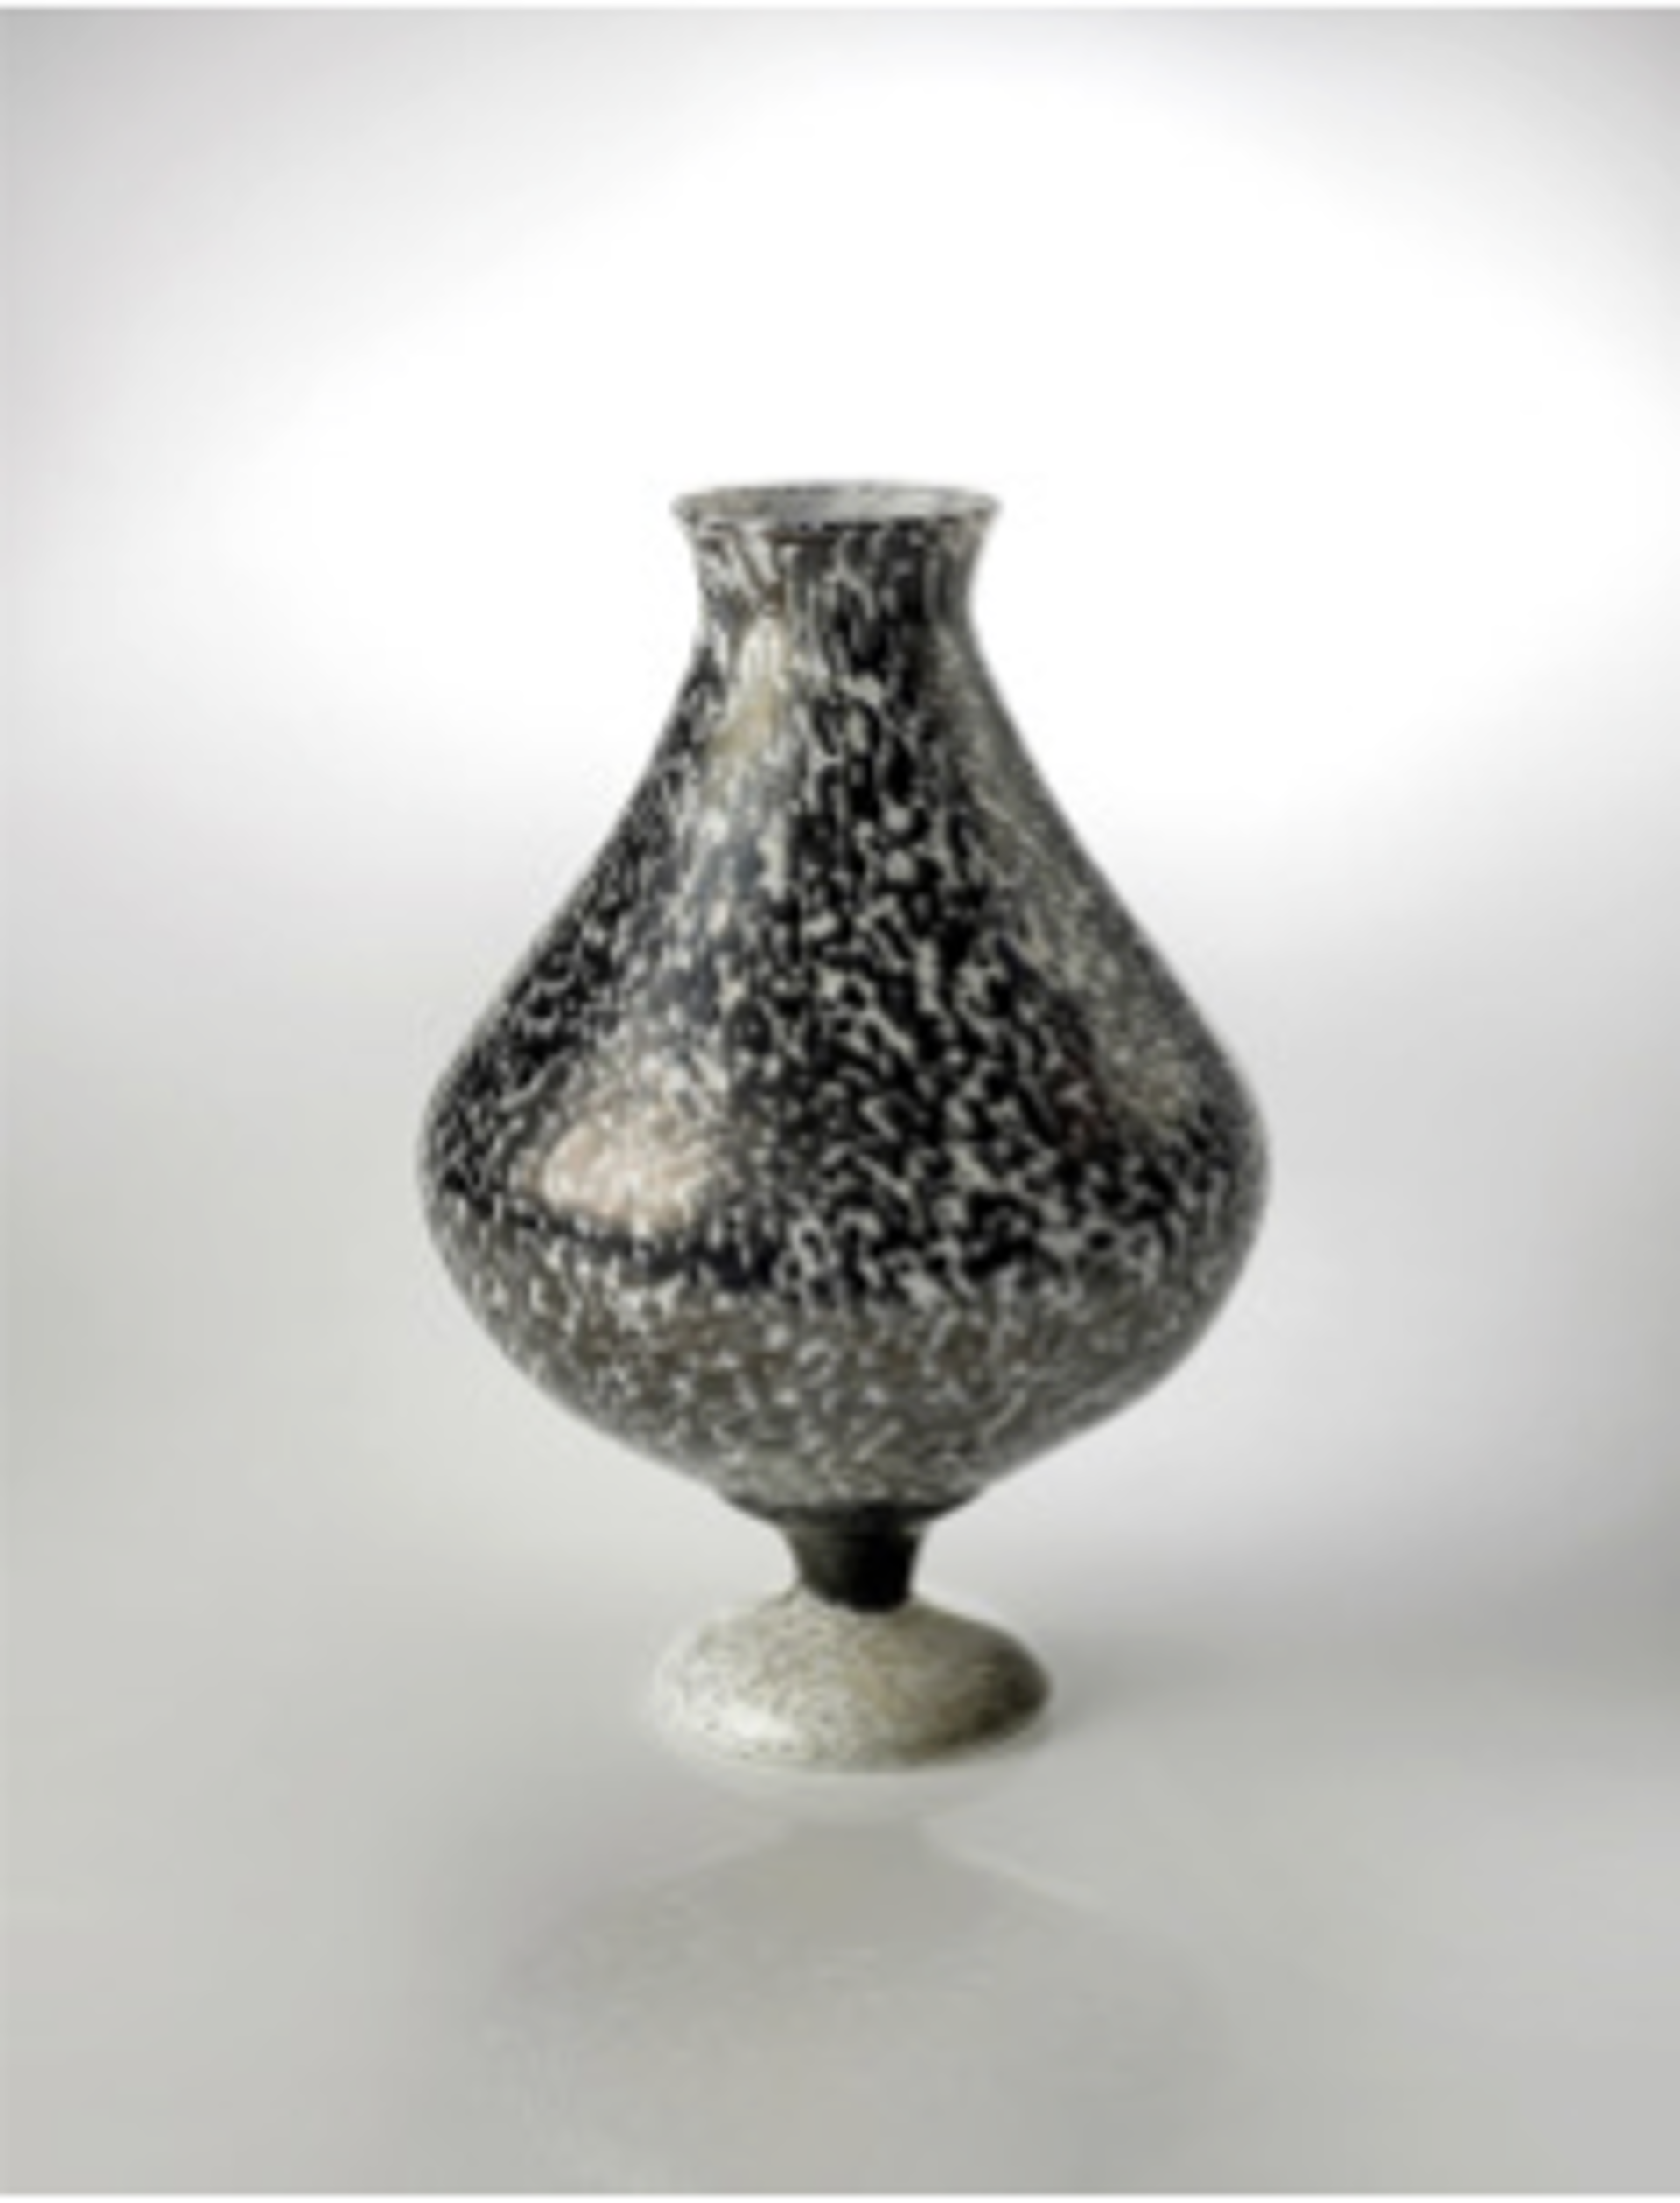 Speckled Egg Footed Vase by Hayden MacRae